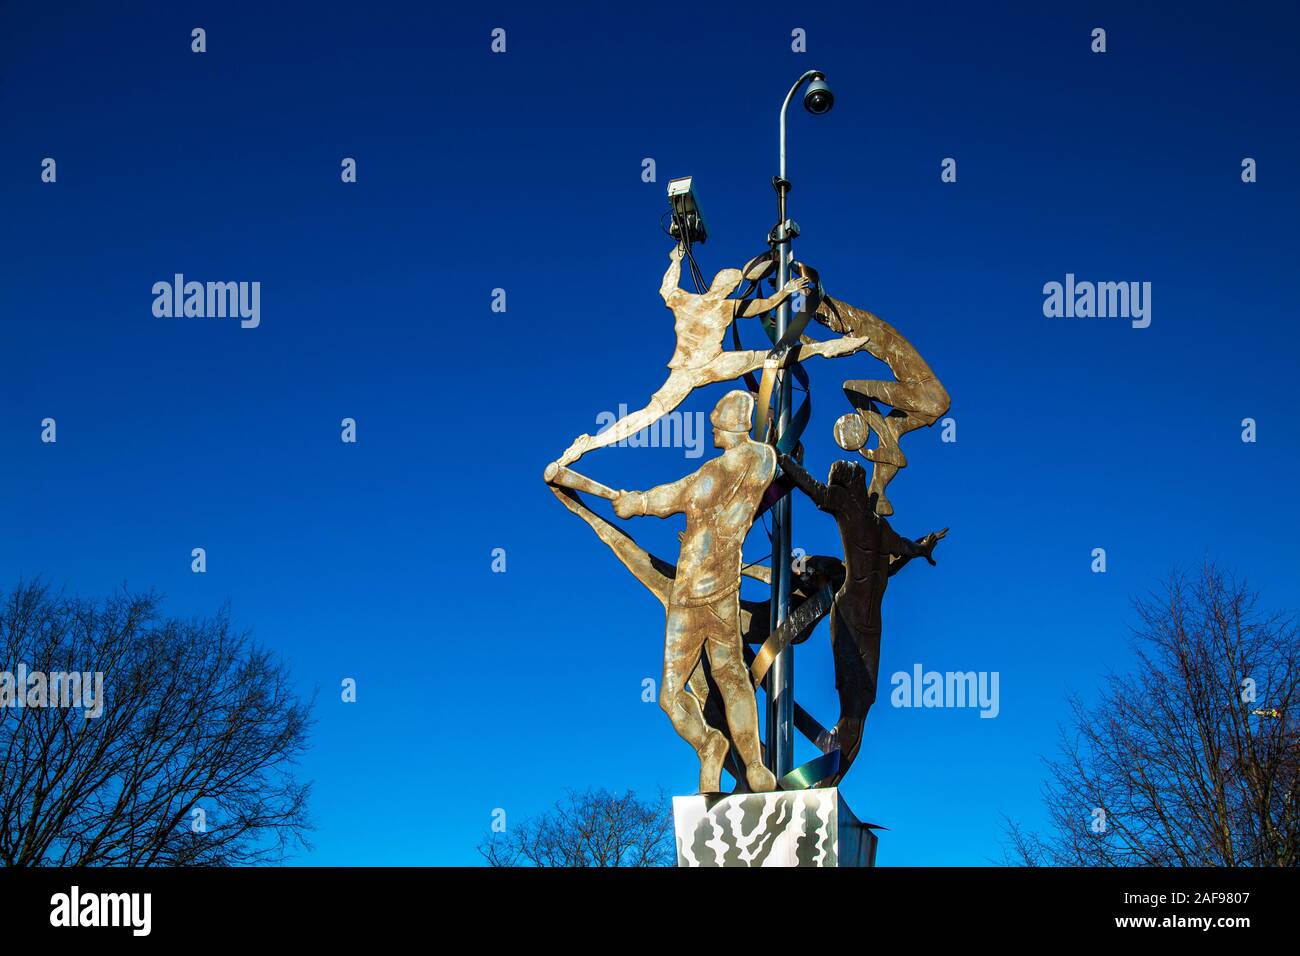 Tissage 'Identités' sculpture par l'artiste Peter Dunn dans les champs des tisserands, des figures humaines tenant une caméra de surveillance, East London, UK Banque D'Images